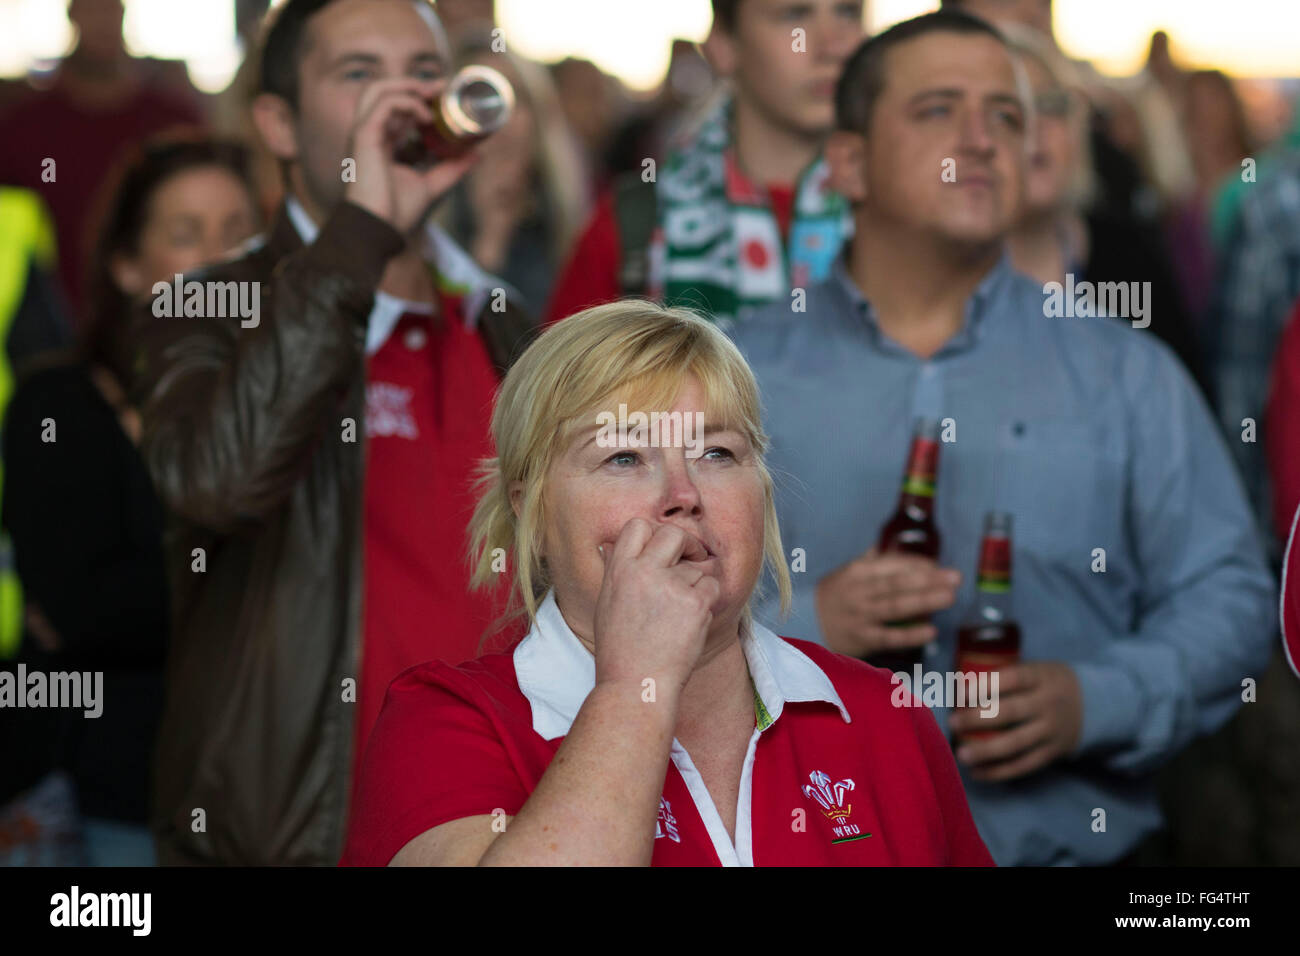 Leidenschaftliche Wales Rugby-Fans sehen Wales während der Rugby-Weltmeisterschaft 2015 in der Fanzone Cardiff in Cardiff, Südwales. Stockfoto